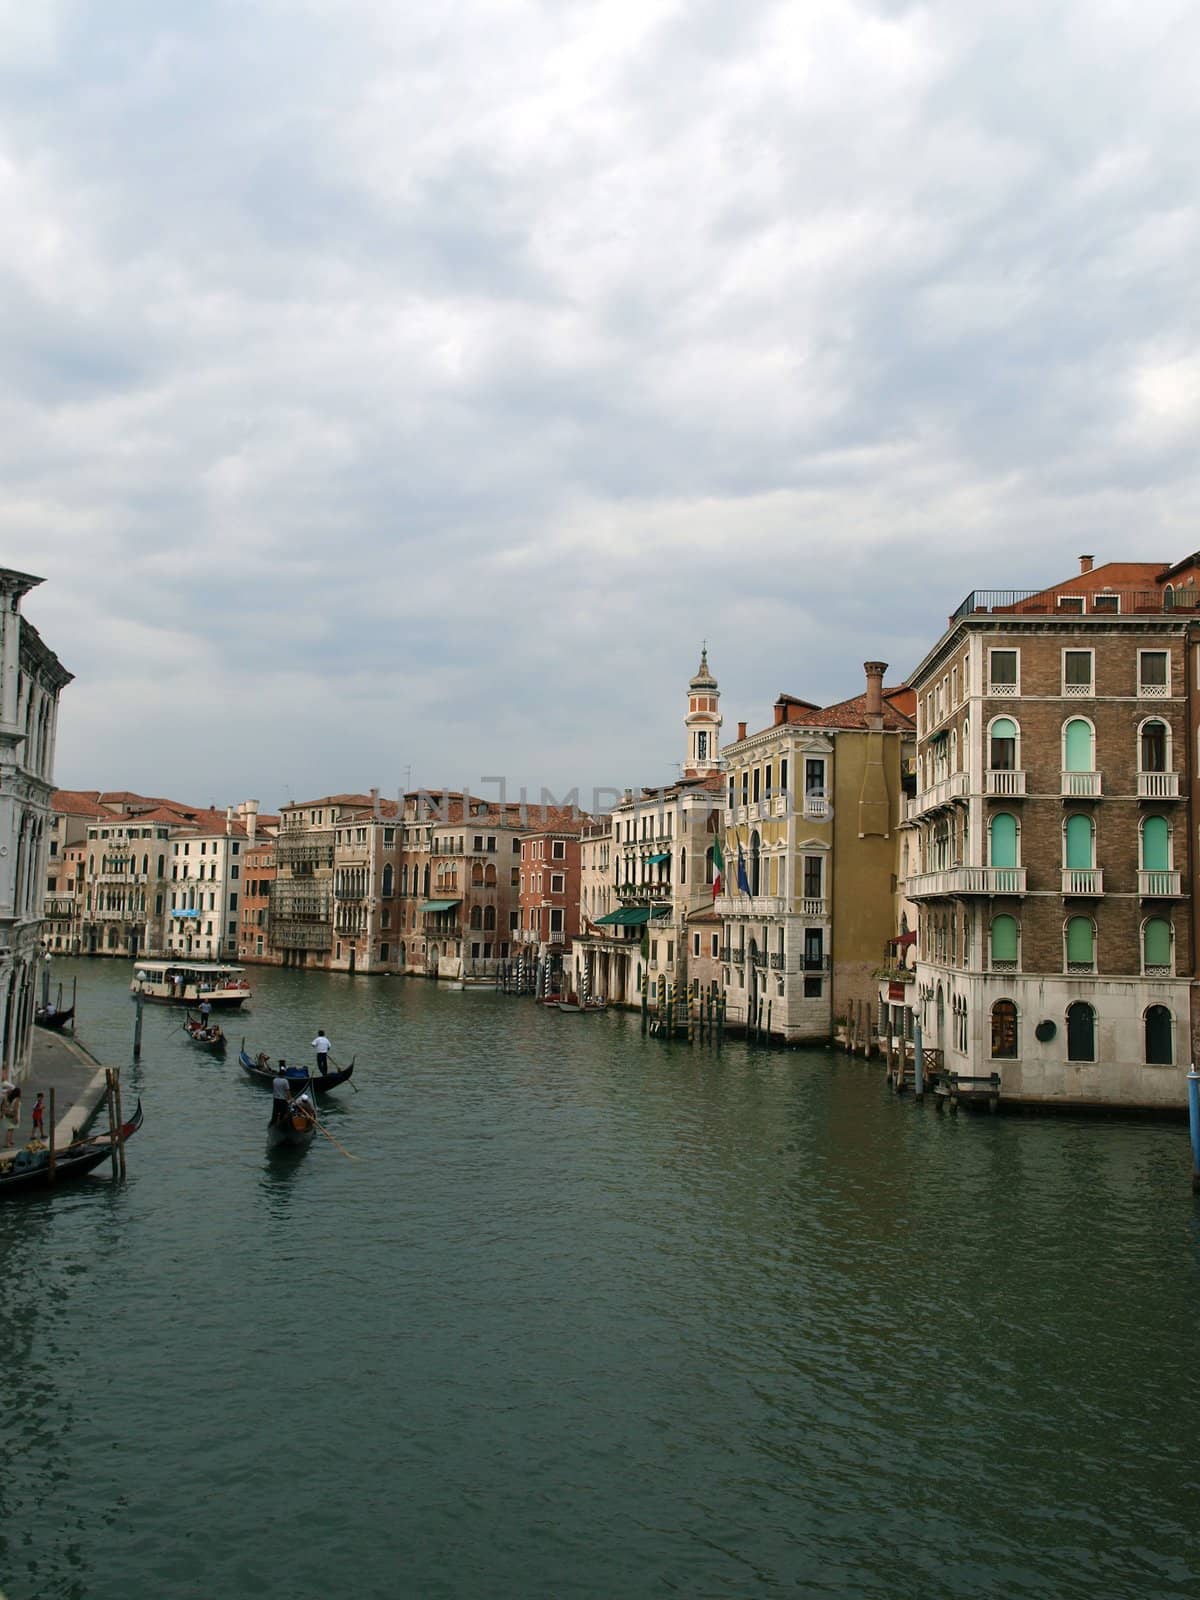 Venice - Exquisite antique buildings along Canal Grande